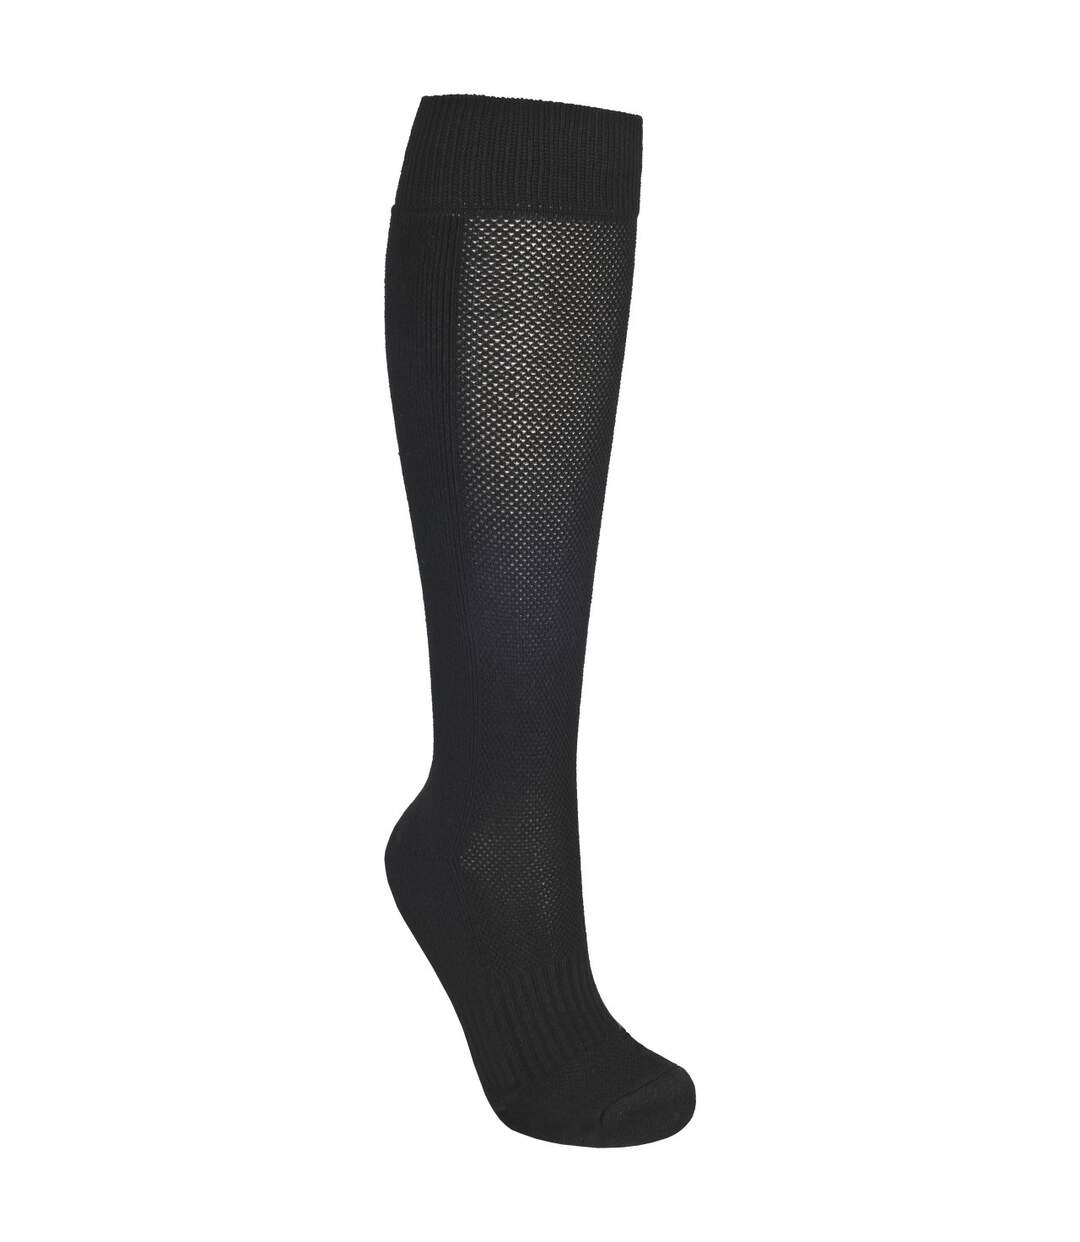 Trespass Mens Exhale Long Length Hiking Boot Socks (Black) - UTTP322